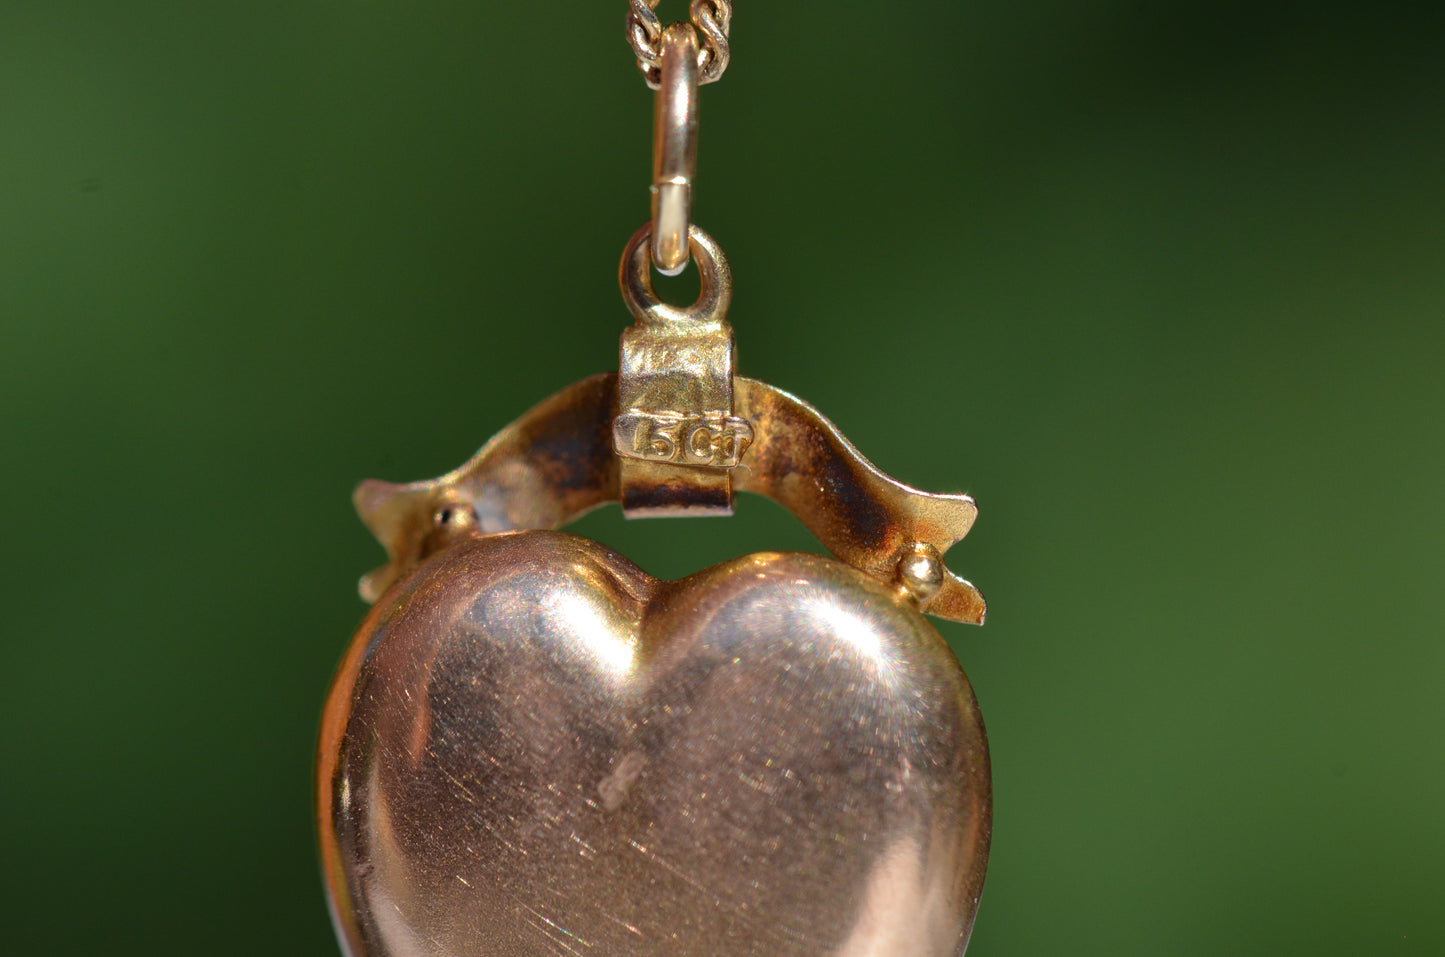 Romantic Antique Heart Pendant